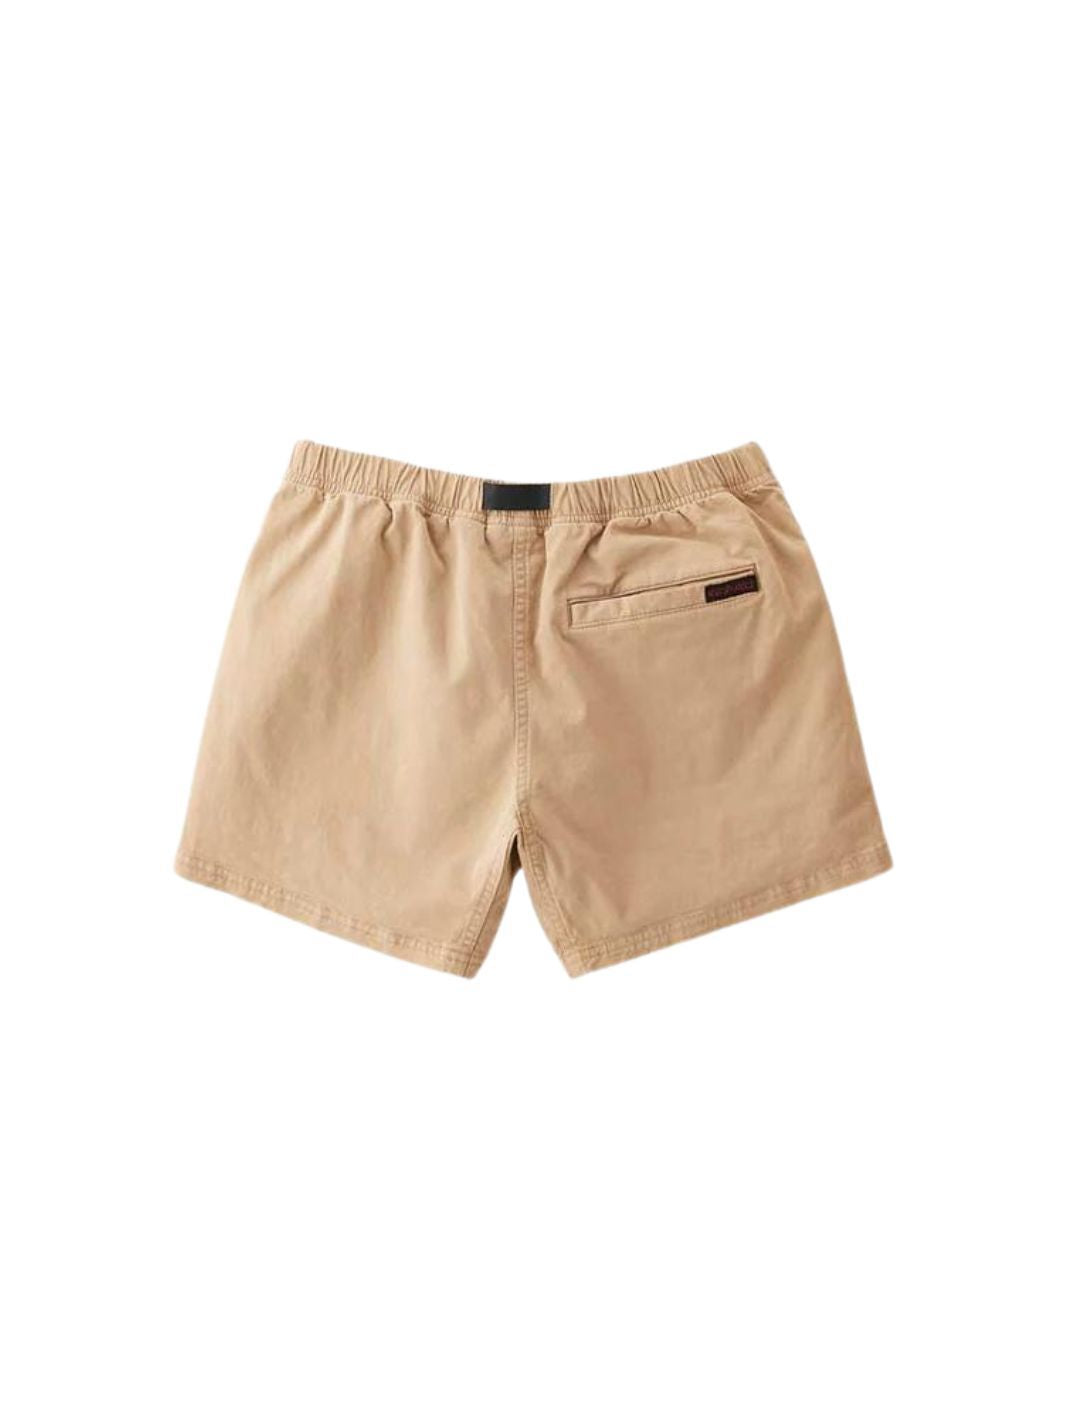 Gramicci Shorts Shorts | Very Short Chino